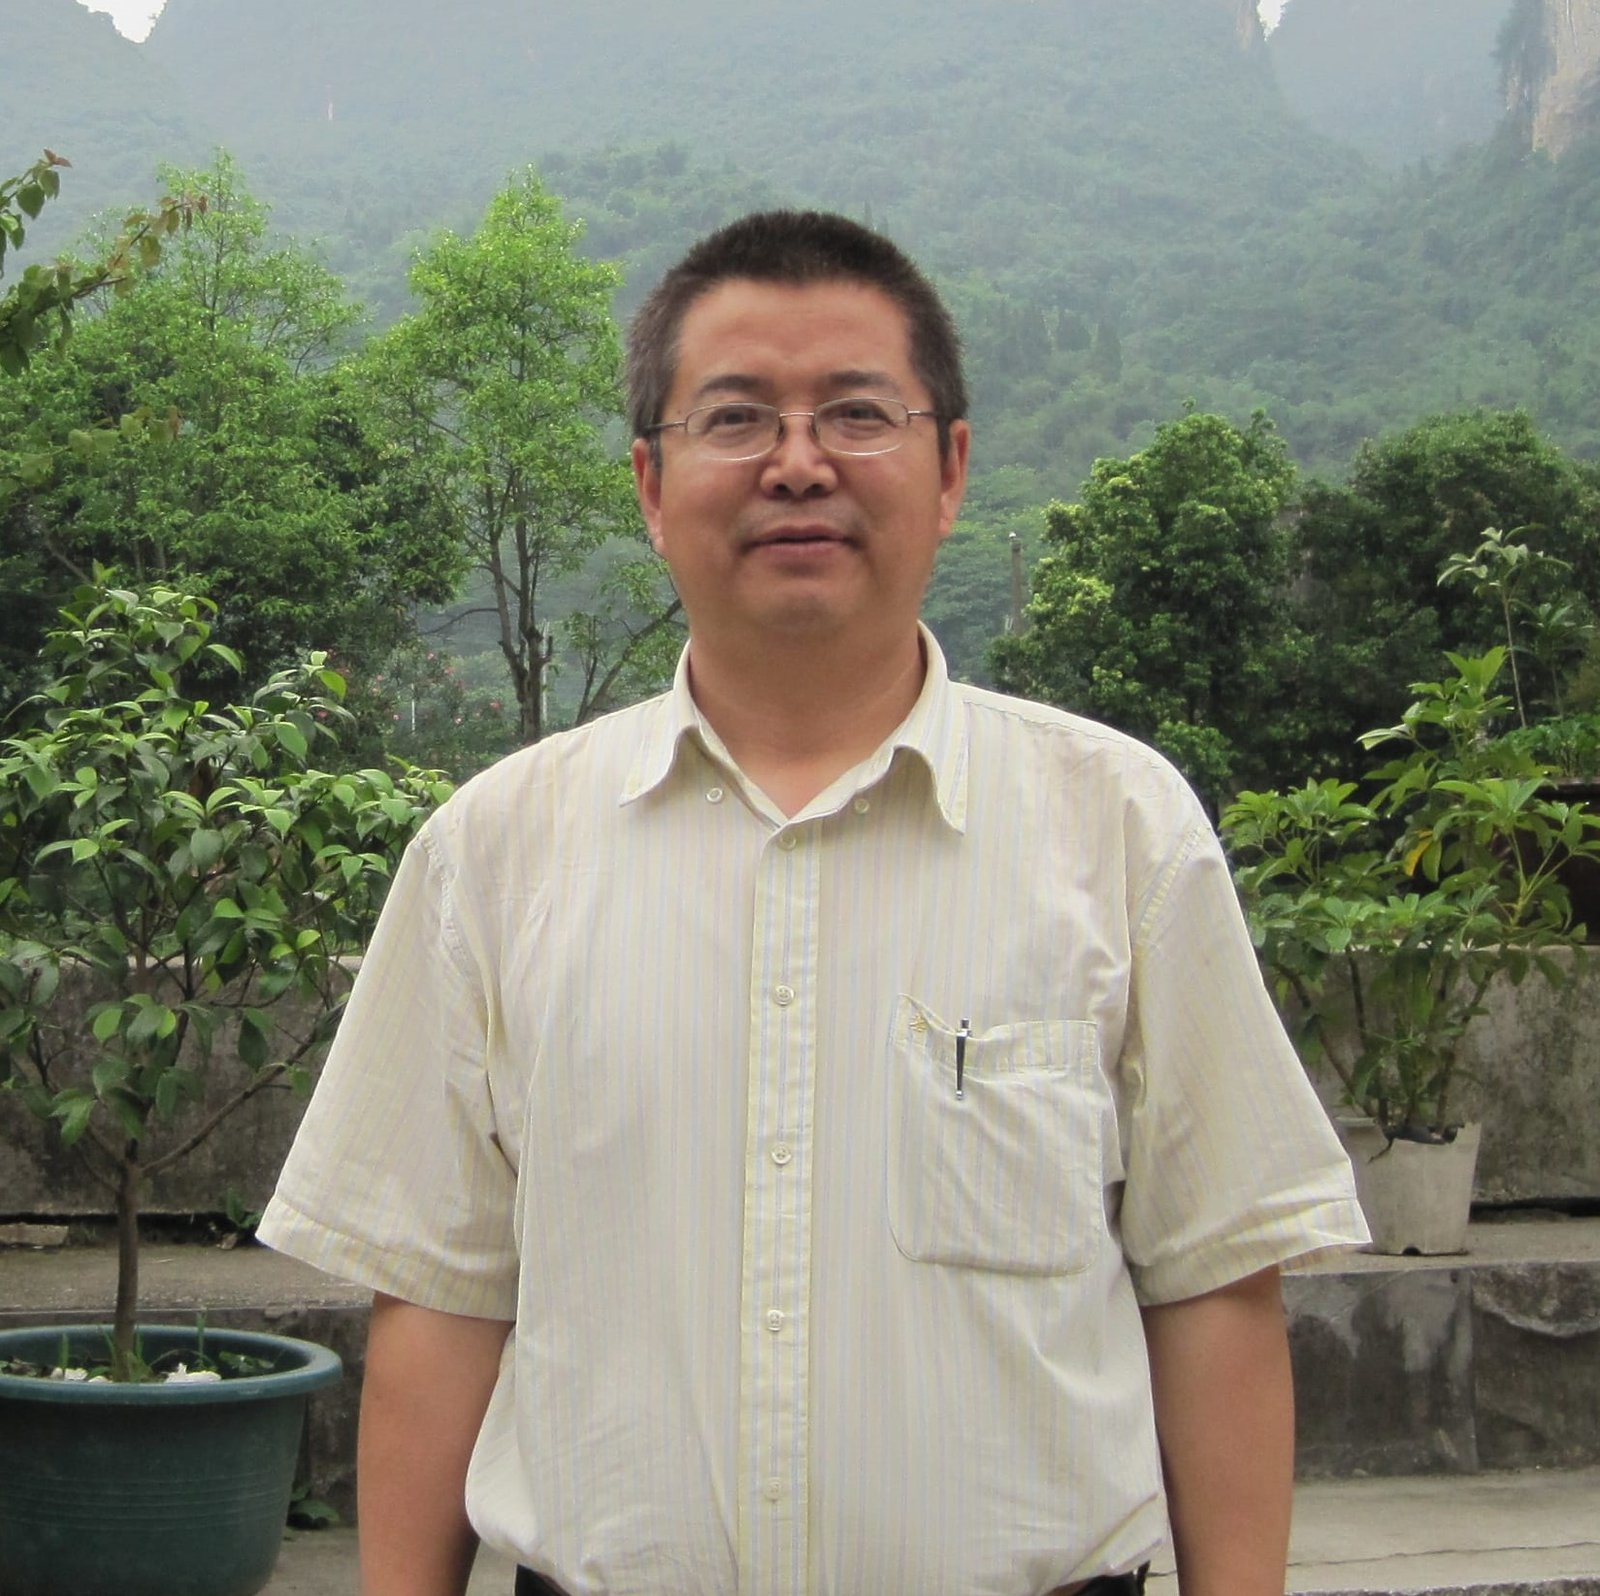 Zhijun Qiao